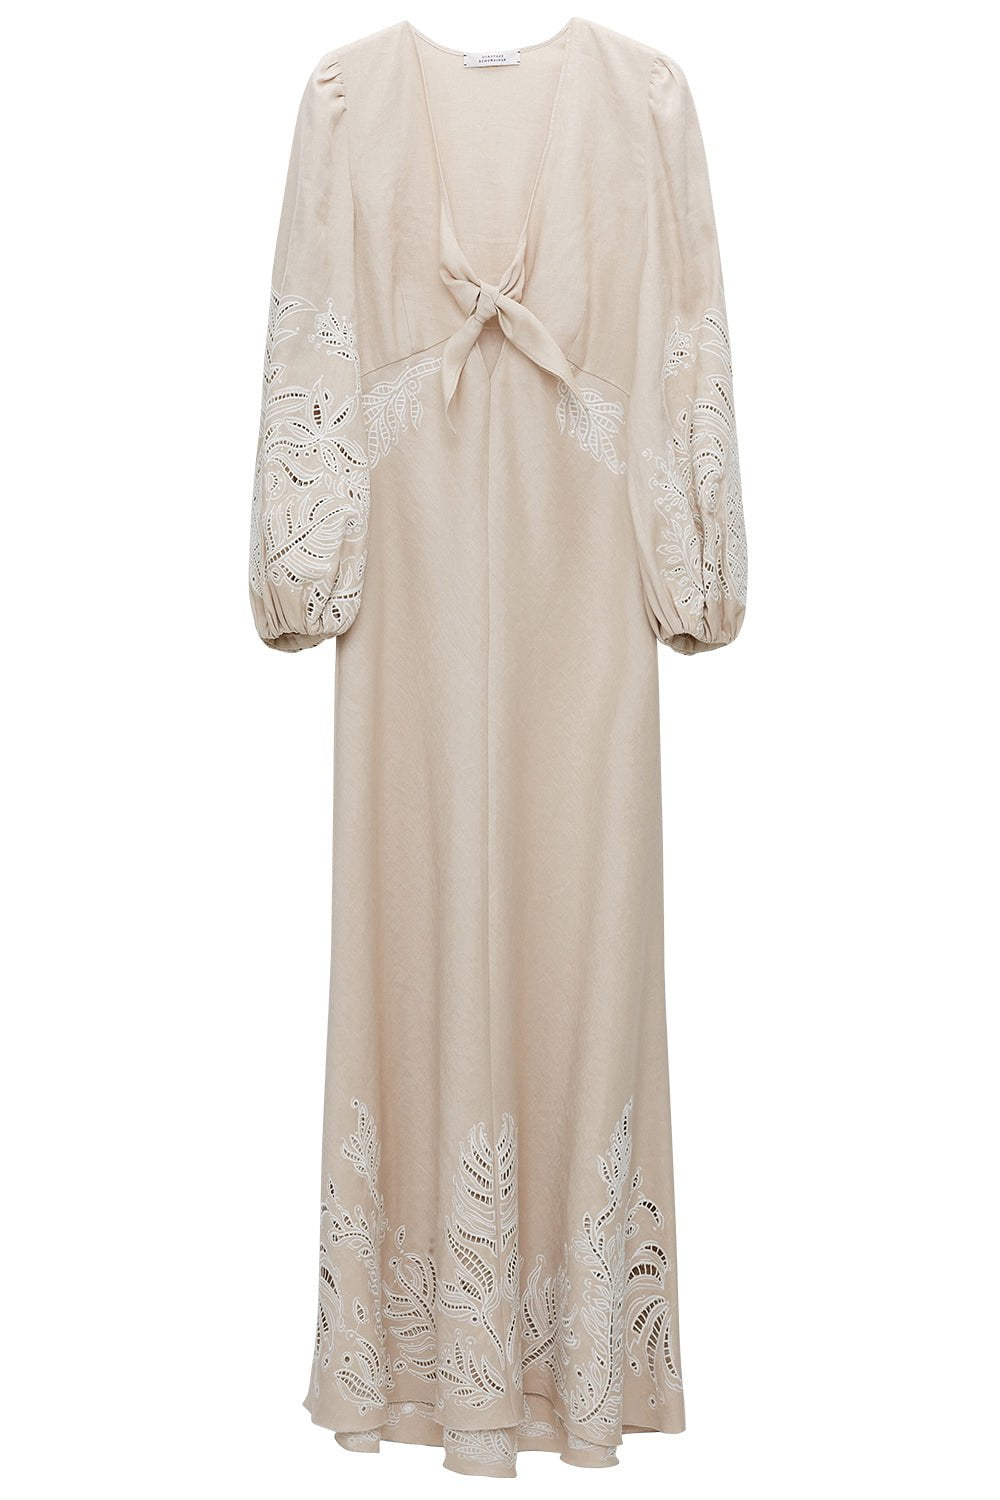 DOROTHEE SCHUMACHER-Exquisite Luxury Dress-